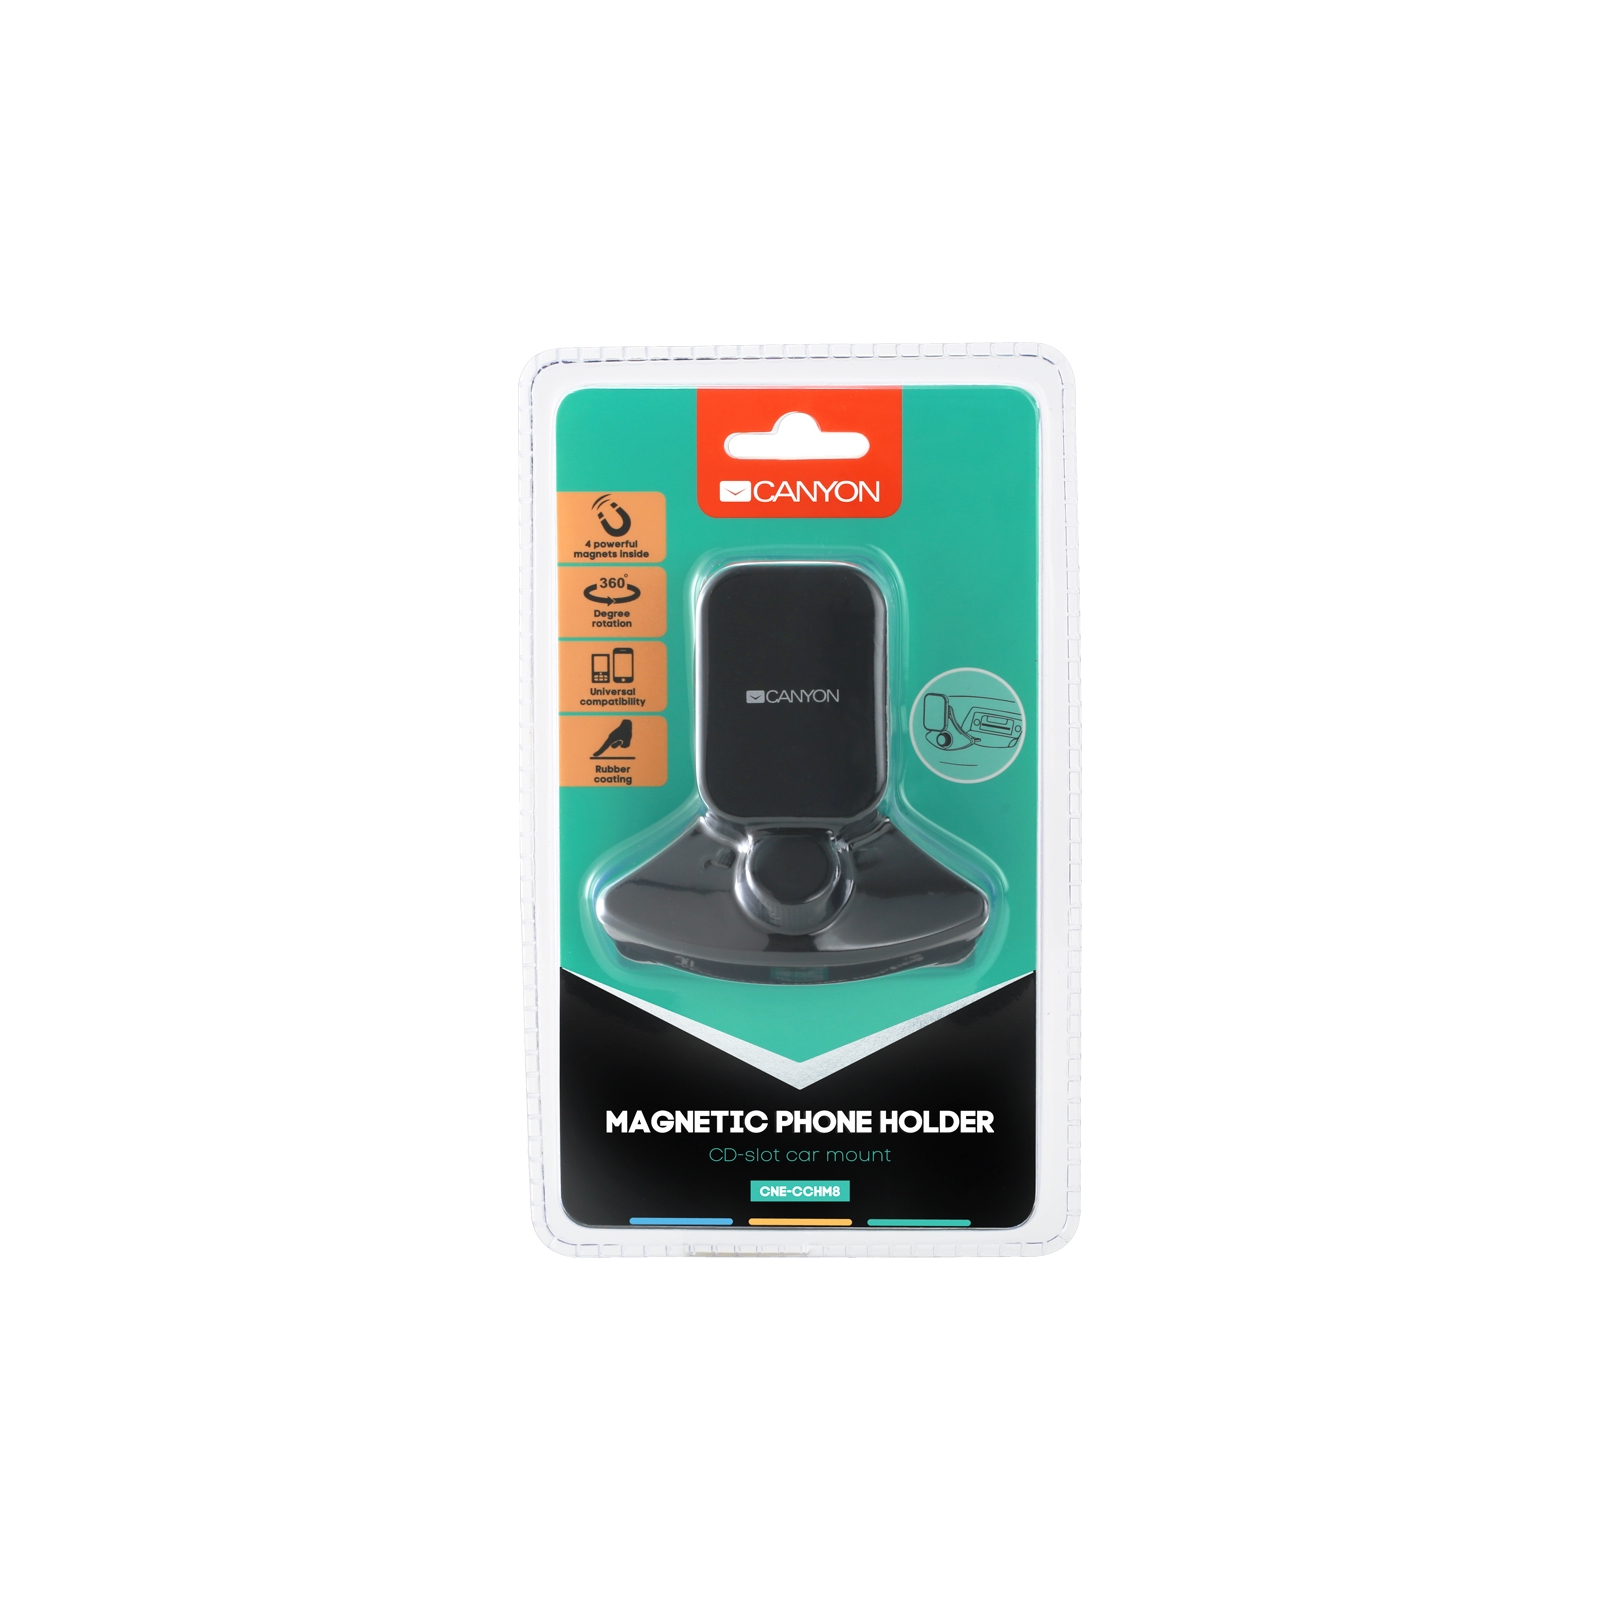 Универсальный автодержатель Canyon Car CD slot magnetic phone holder (CNE-CCHM8) изображение 5